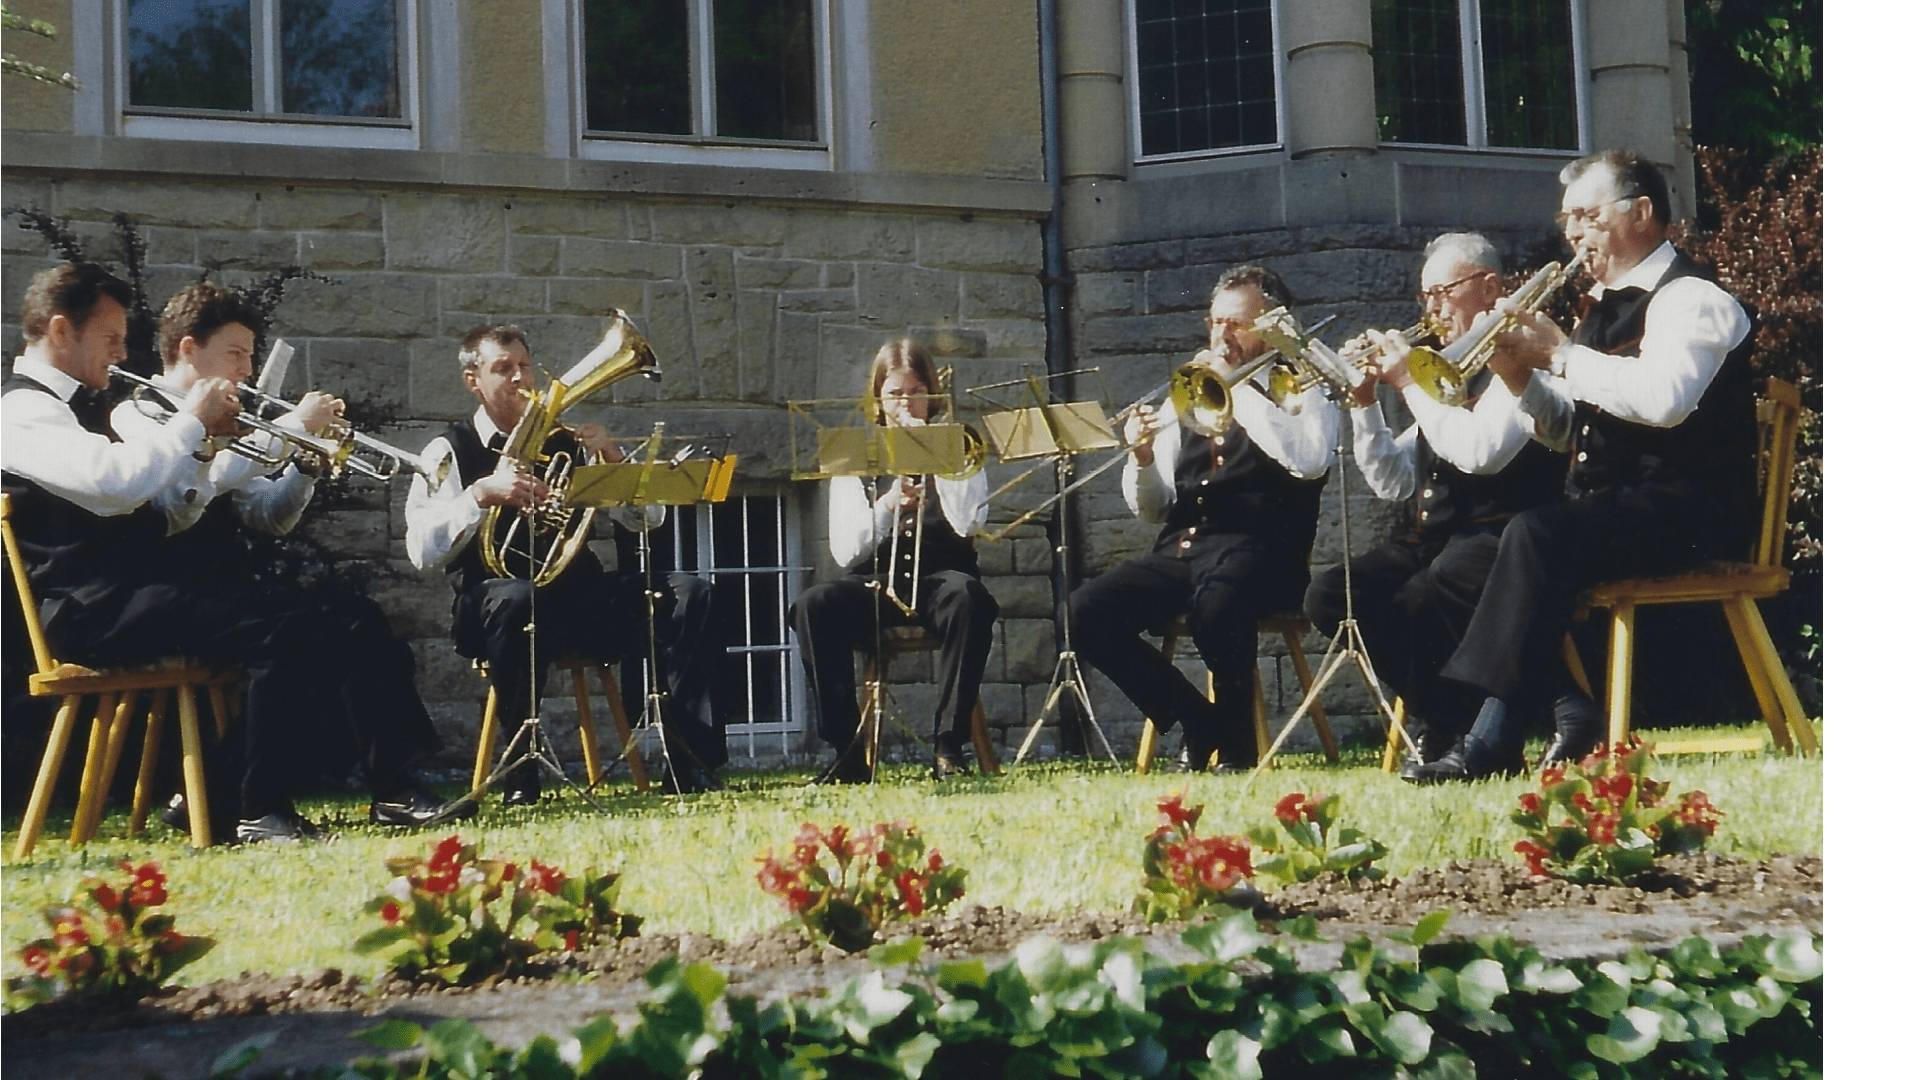 Wallfahrt 1995 - Blaskapelle Franz Haumann, Dießen a. See.  Foto: Archiv Arme Schulschwestern